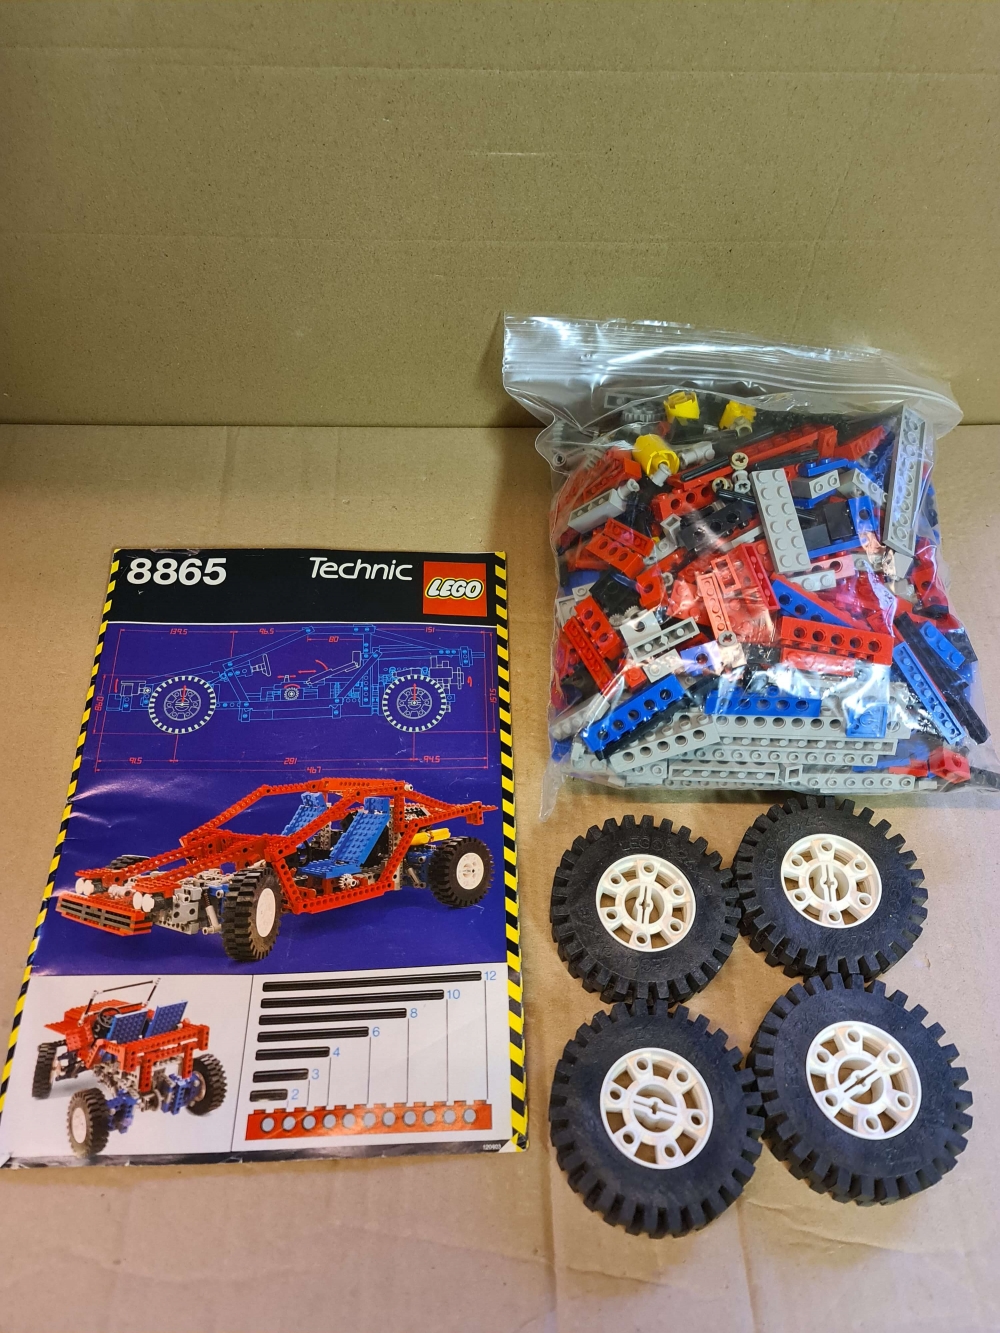 Sett 8865 fra Lego Technic serien.
Flott sett. Hvite fine felger.
Komplett med manual.